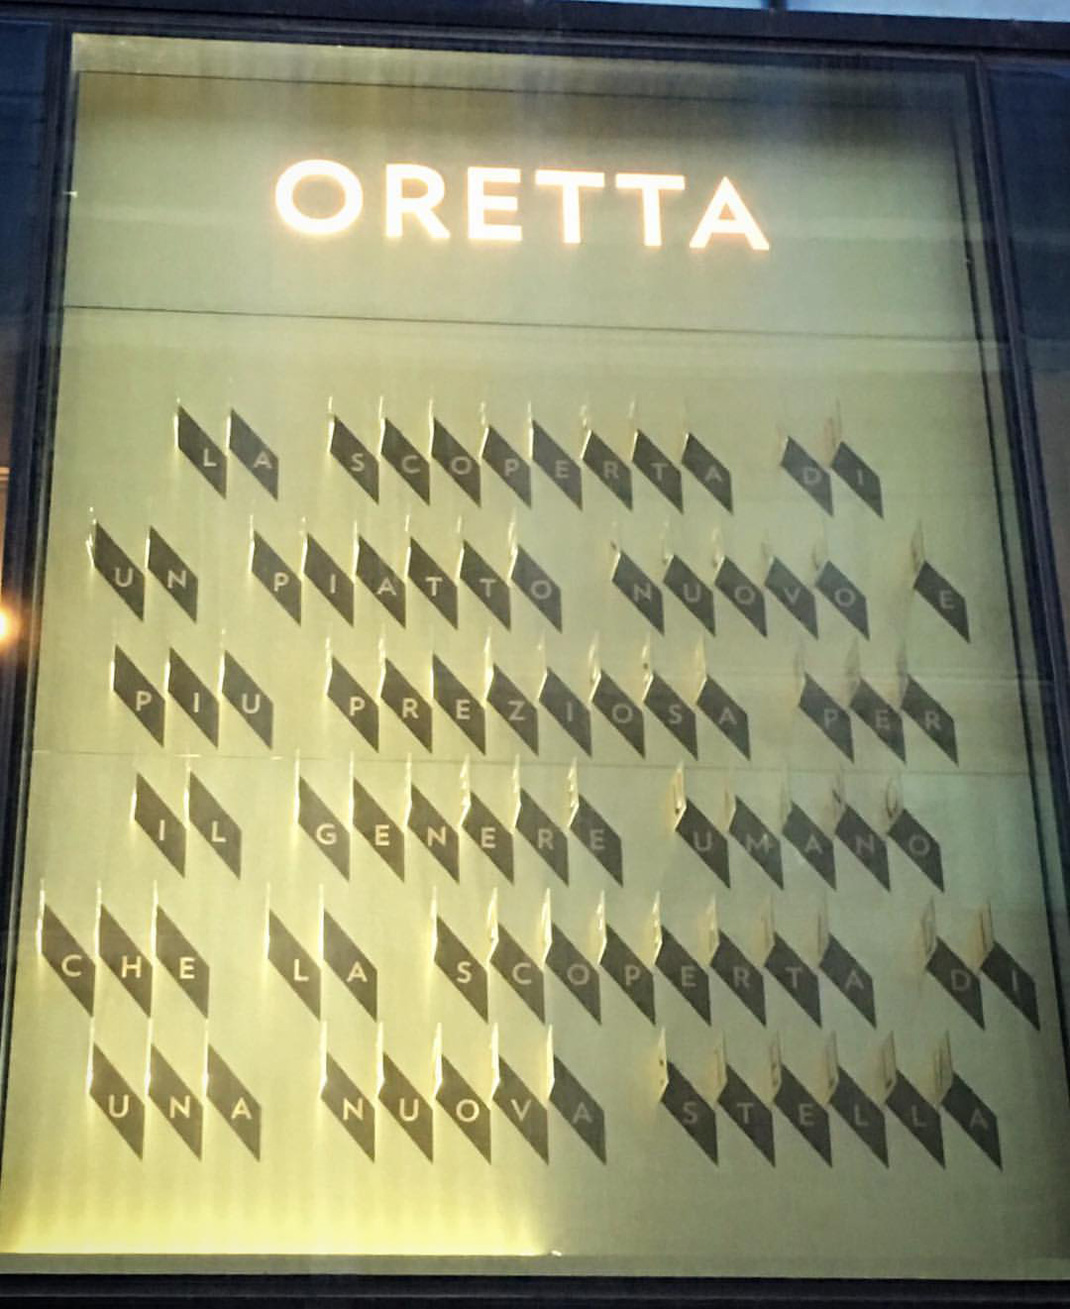 意大利餐厅Oretta 意大利 主题餐厅 金属 阵列 logo设计 vi设计 空间设计